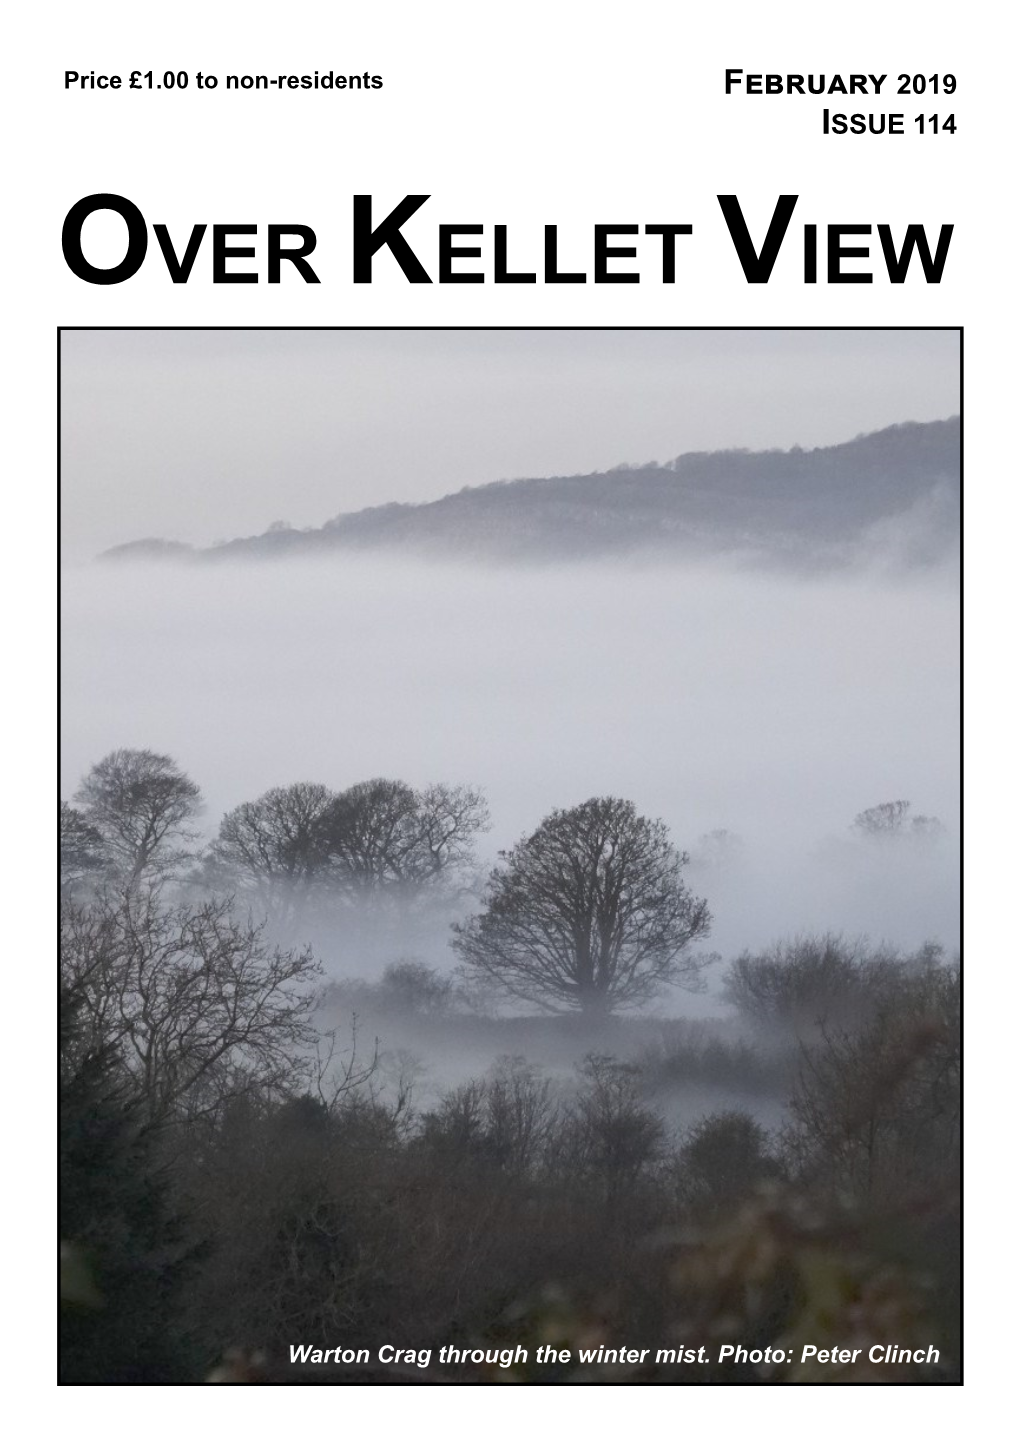 Over Kellet View